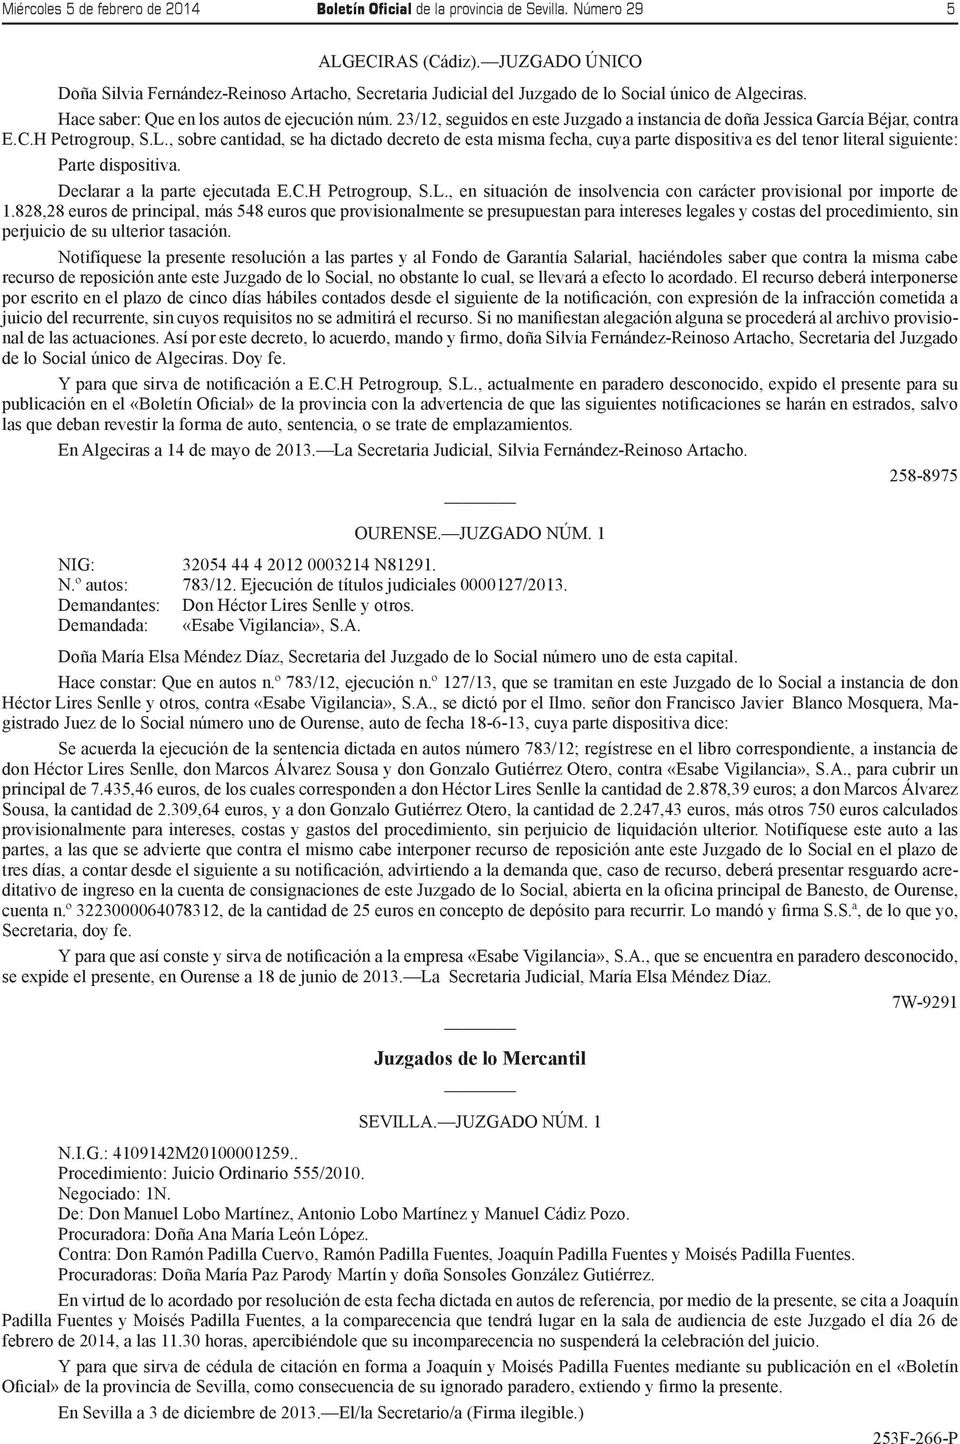 23/12, seguidos en este Juzgado a instancia de doña Jessica García Béjar, contra E.C.H Petrogroup, S.L.